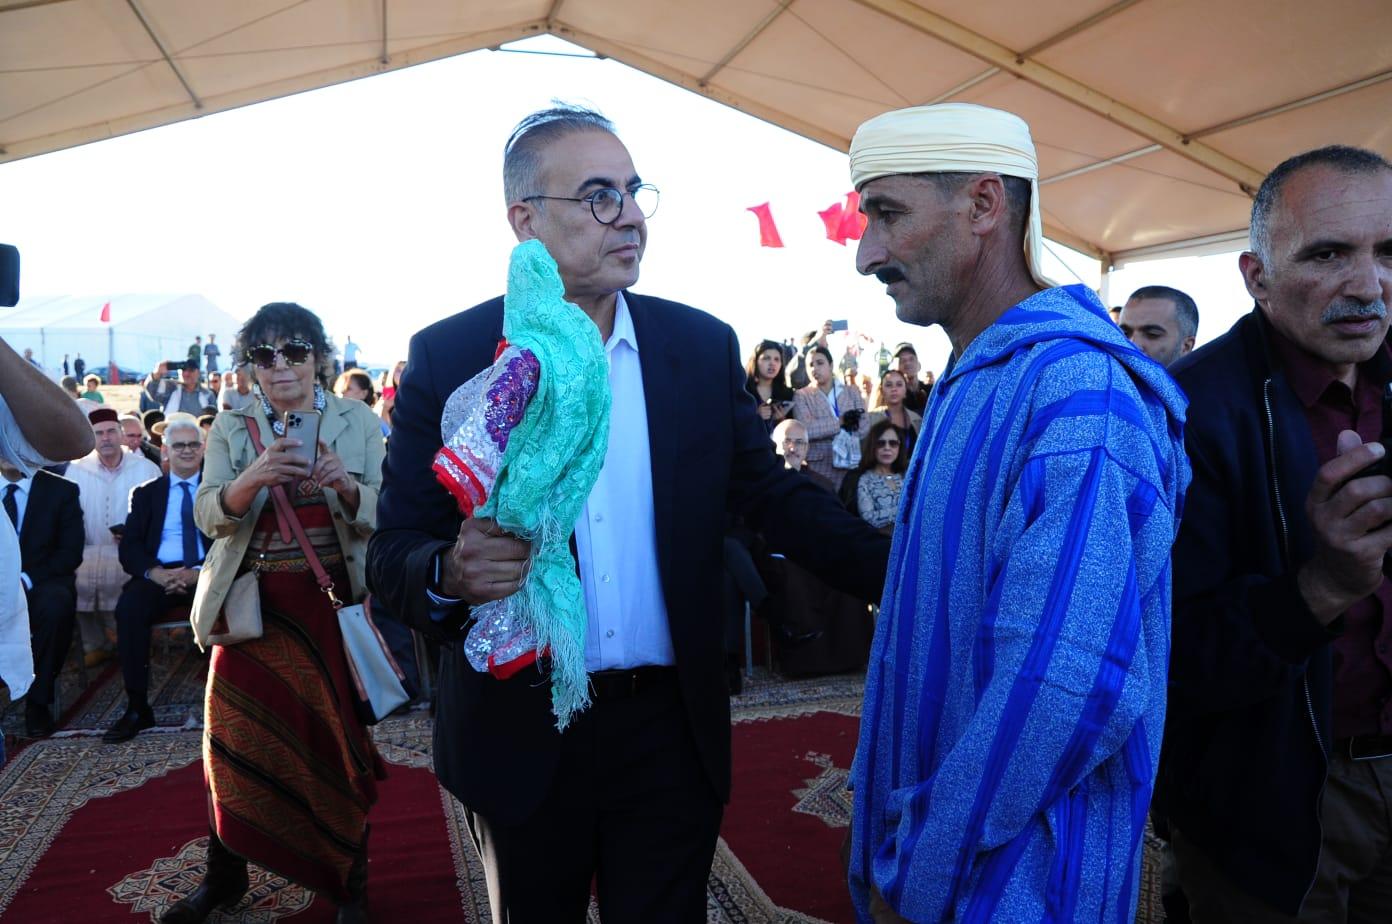 Le président du festival, Nabil Baraka, donnant le coup d’envoi au Festival équestre international de Mata. Ph. Nidal